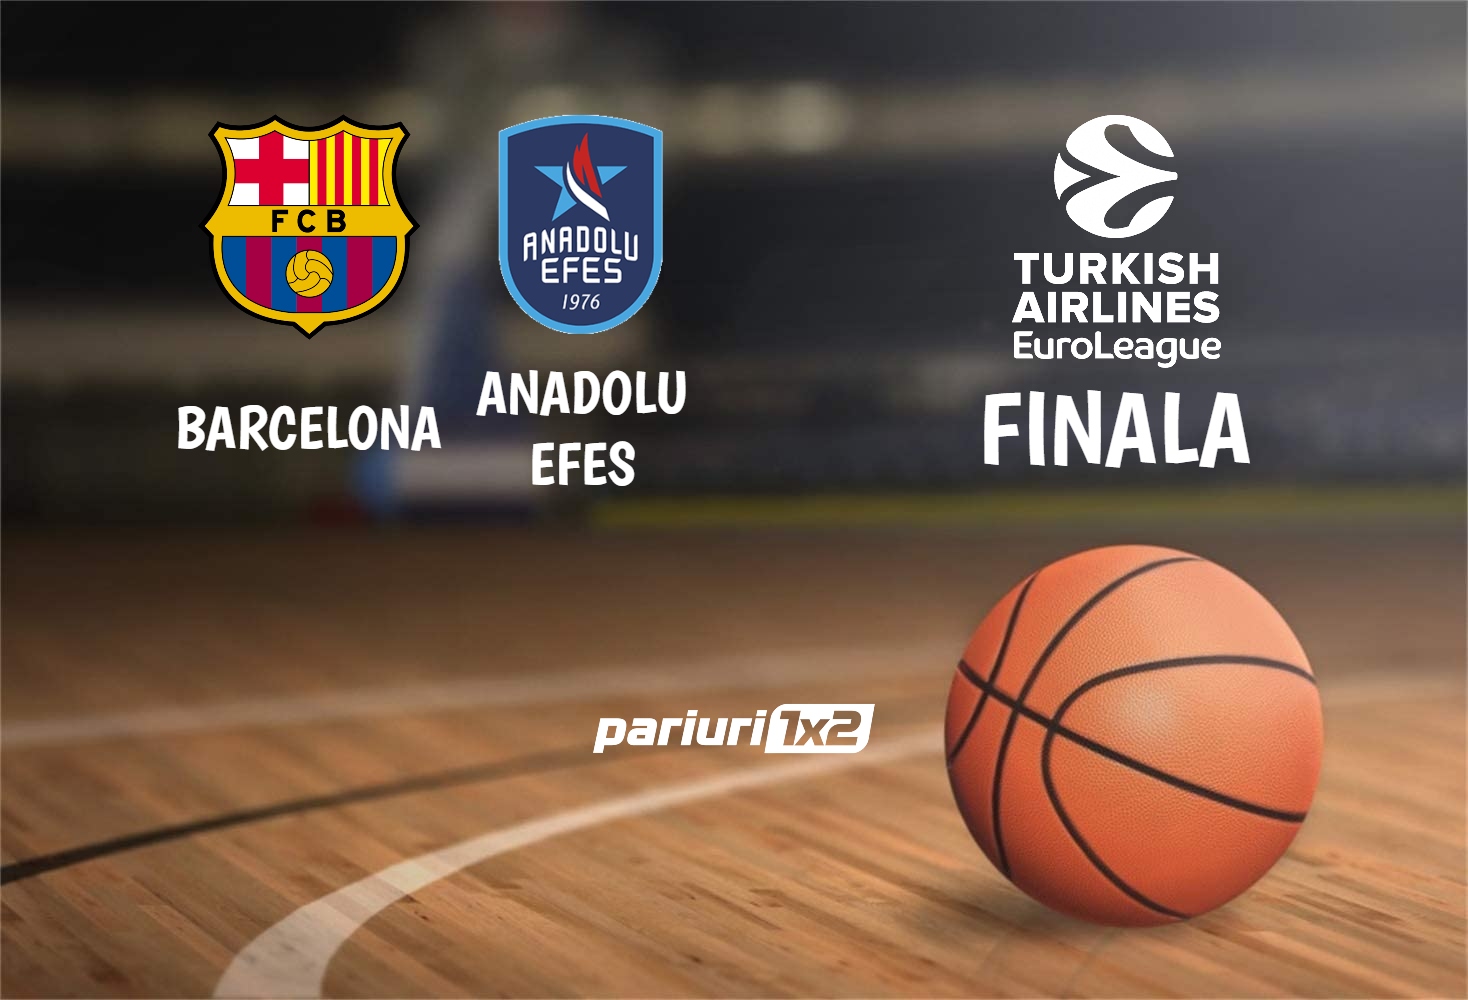 Pariuri baschet » Barcelona – Anadolu Efes: Finala de zile mari in Euroliga!